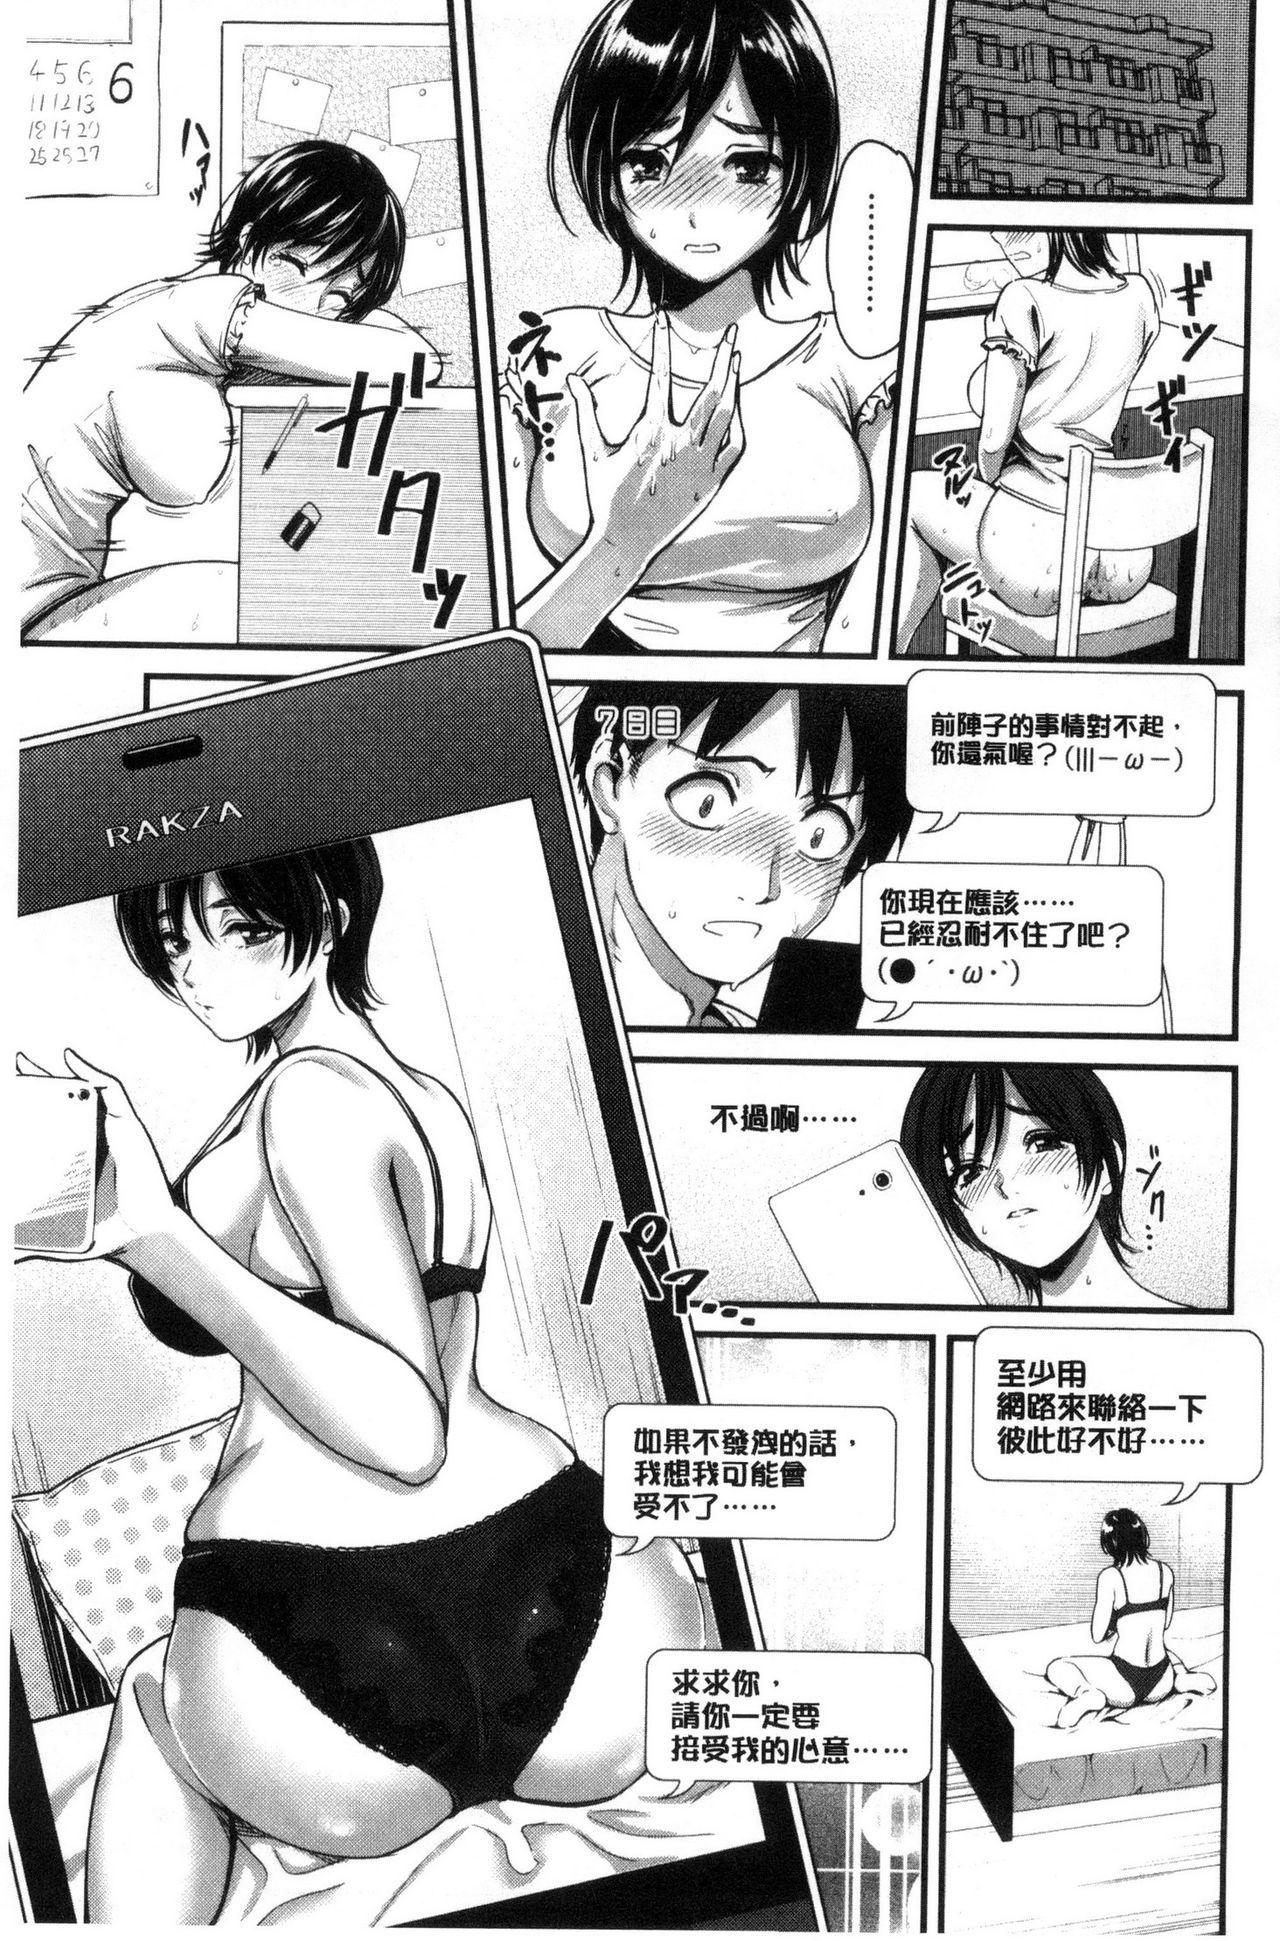 Slave Seifuku no Mama Aishinasai! - Love in school uniform Raw - Page 9